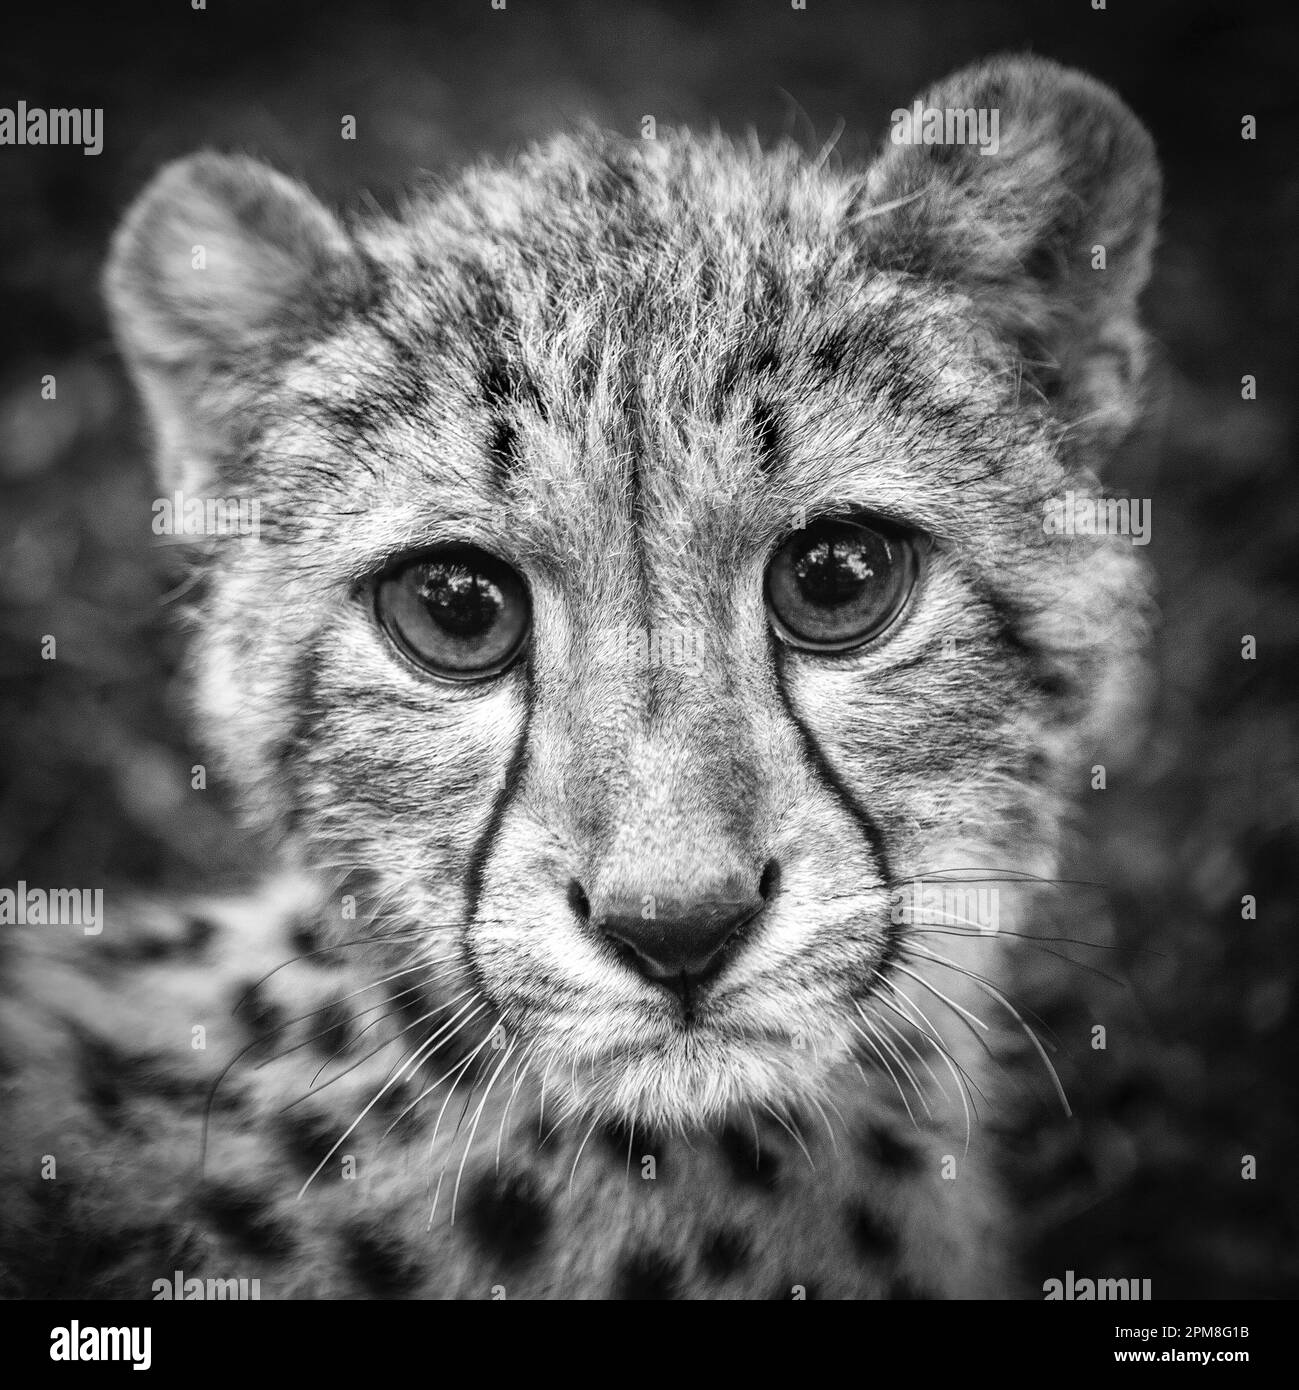 Sudafrica, Pretoria, Cheetah, Acionyx jubatus. Cucciolo di 5 mesi. Prigionia. Immagine in bianco e nero. Foto Stock